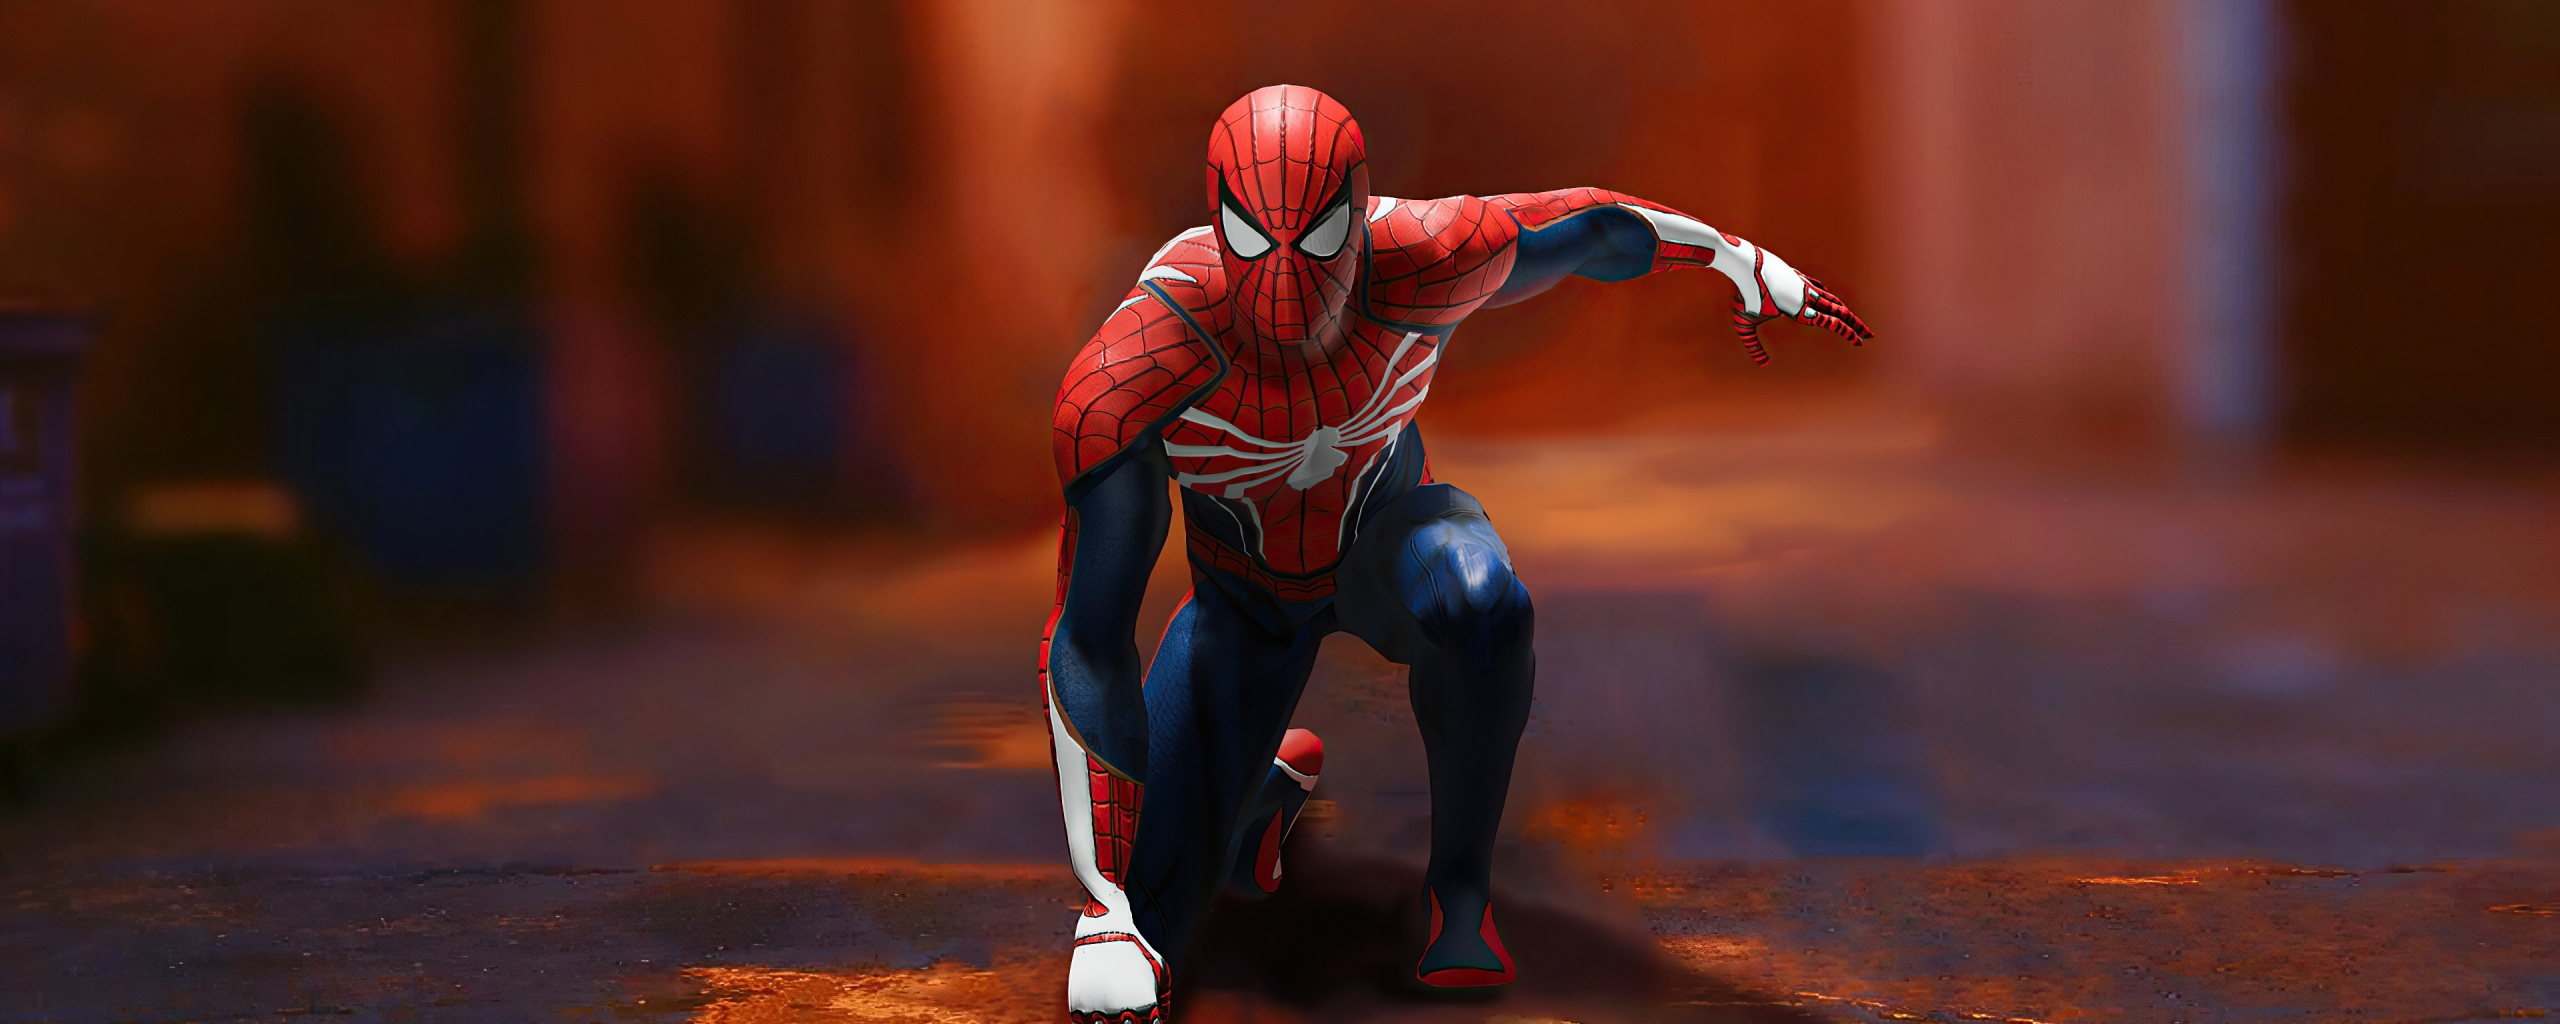 Imagens vazadas mostram Spider-Man Remastered rodando em um PC com monitor  ultrawide